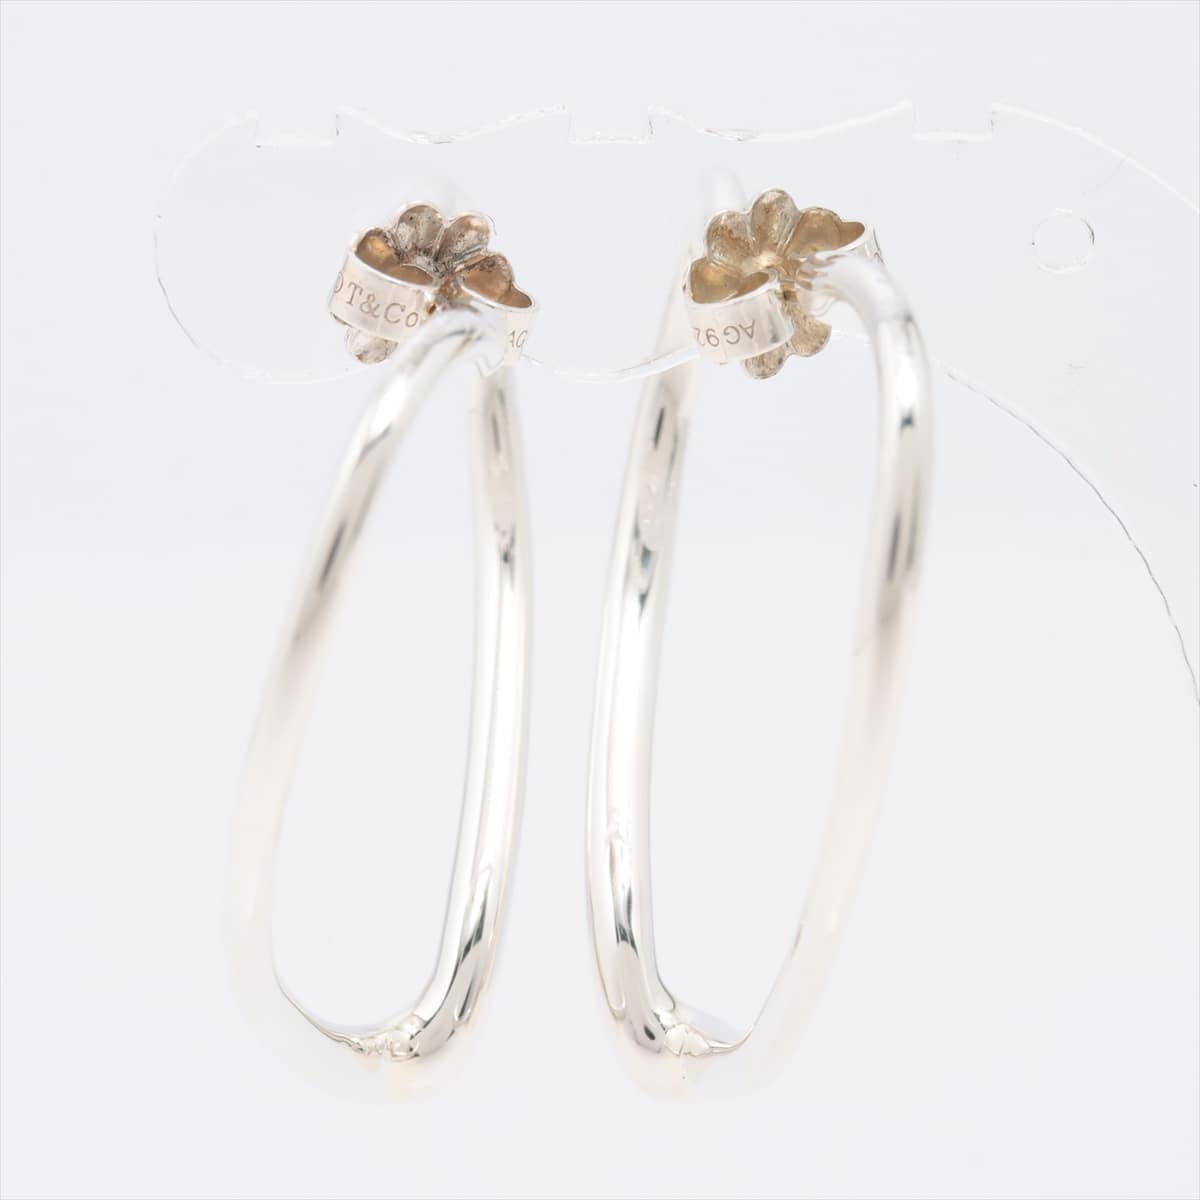 Tiffany Open Heart Piercing jewelry (for both ears) 925 5.3g Silver